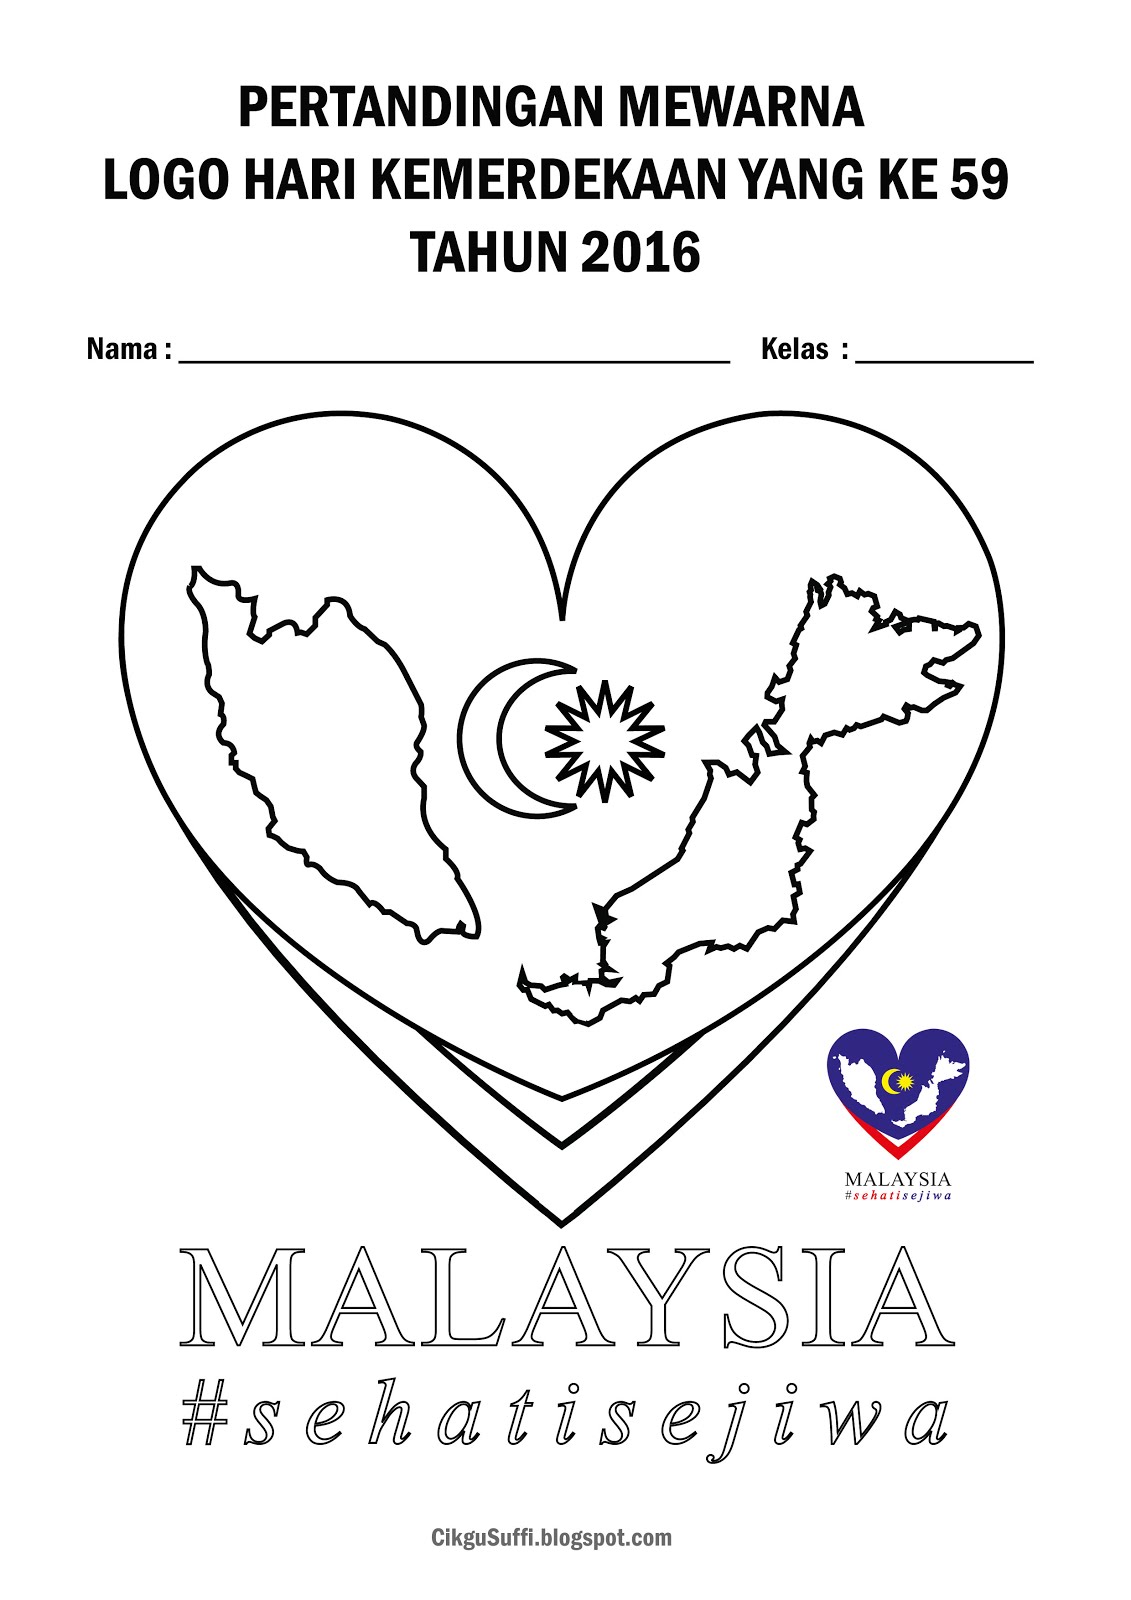 Mari mewarna logo hari kebangsaan 2016 - Cikgu Suffi (CS)